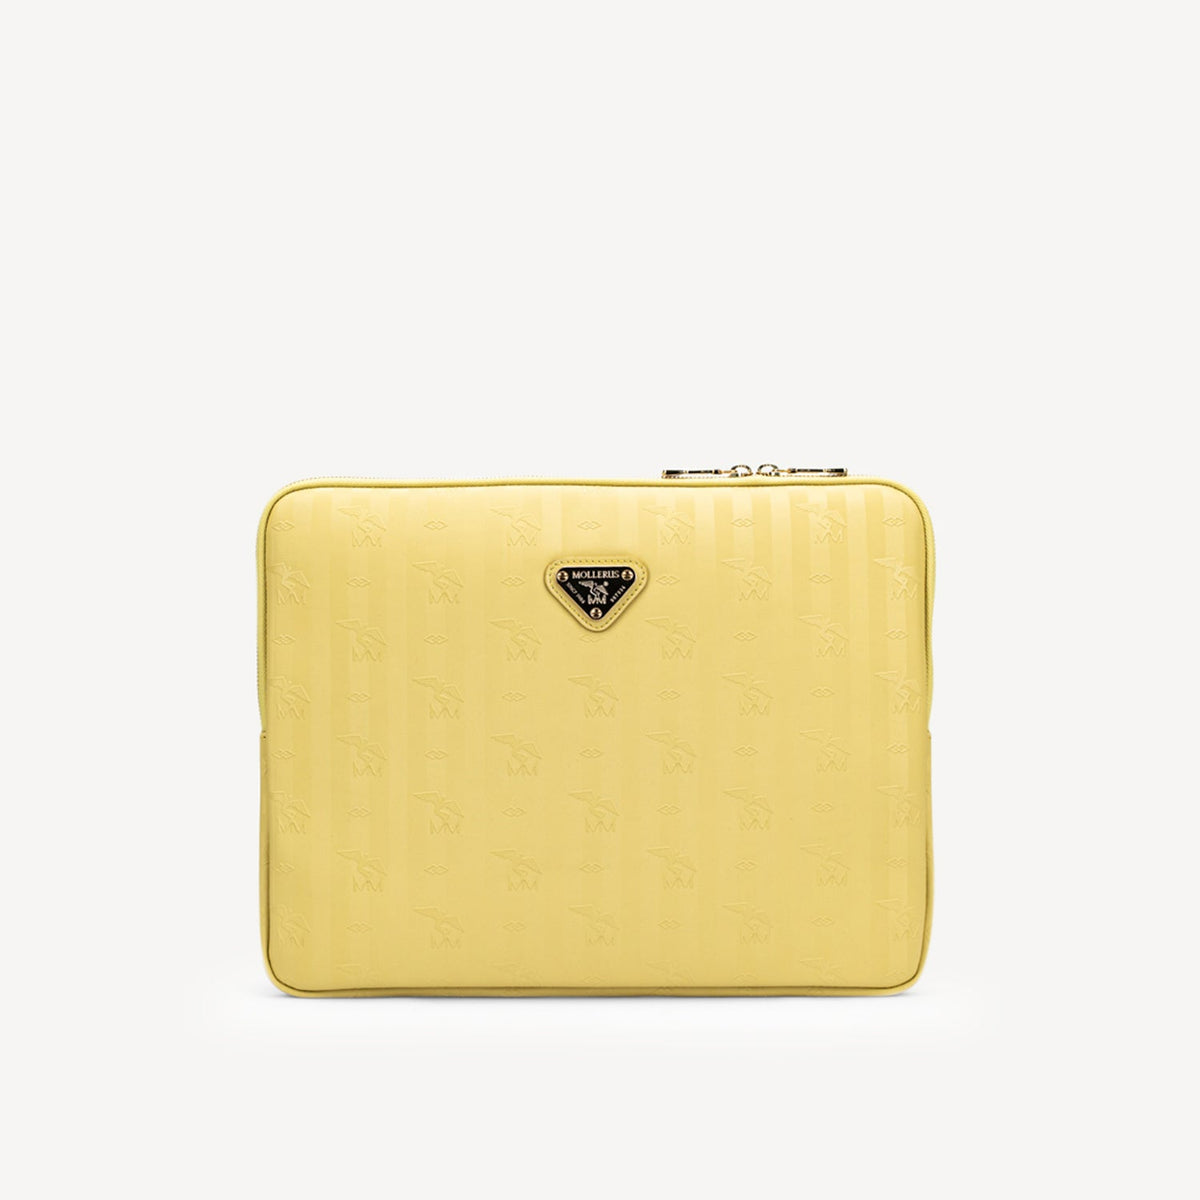 ROETI | Laptoptasche ginger gelb/gold